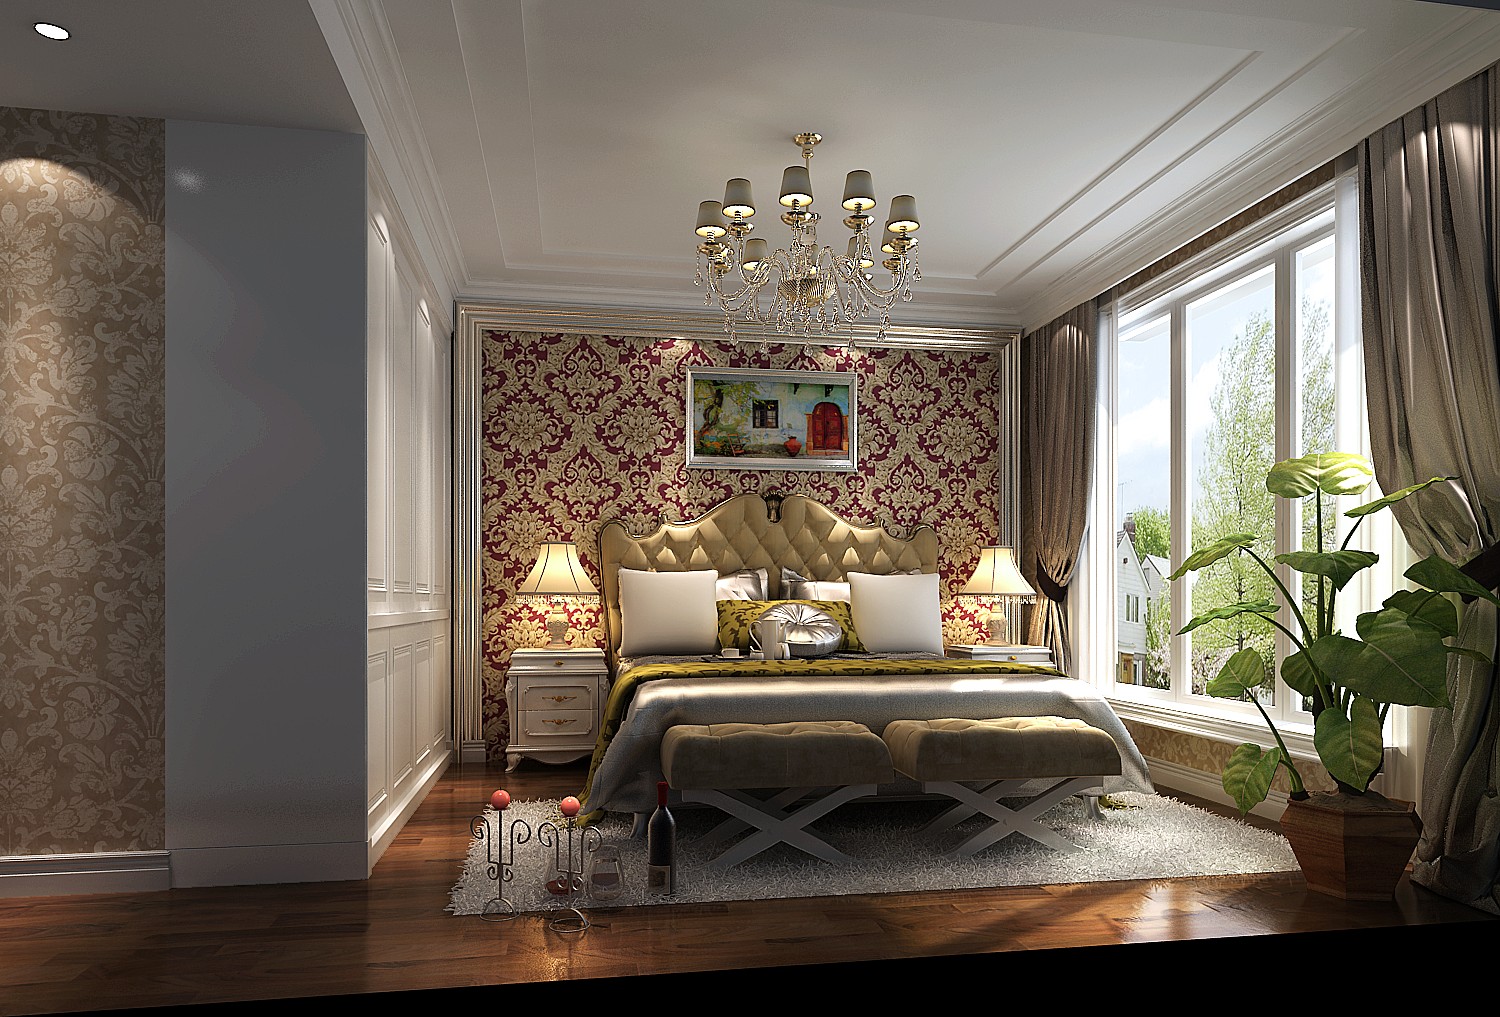 高度国际 天润福熙大 新古典 公寓 卧室图片来自高度国际在天润福熙大道--166平米的分享